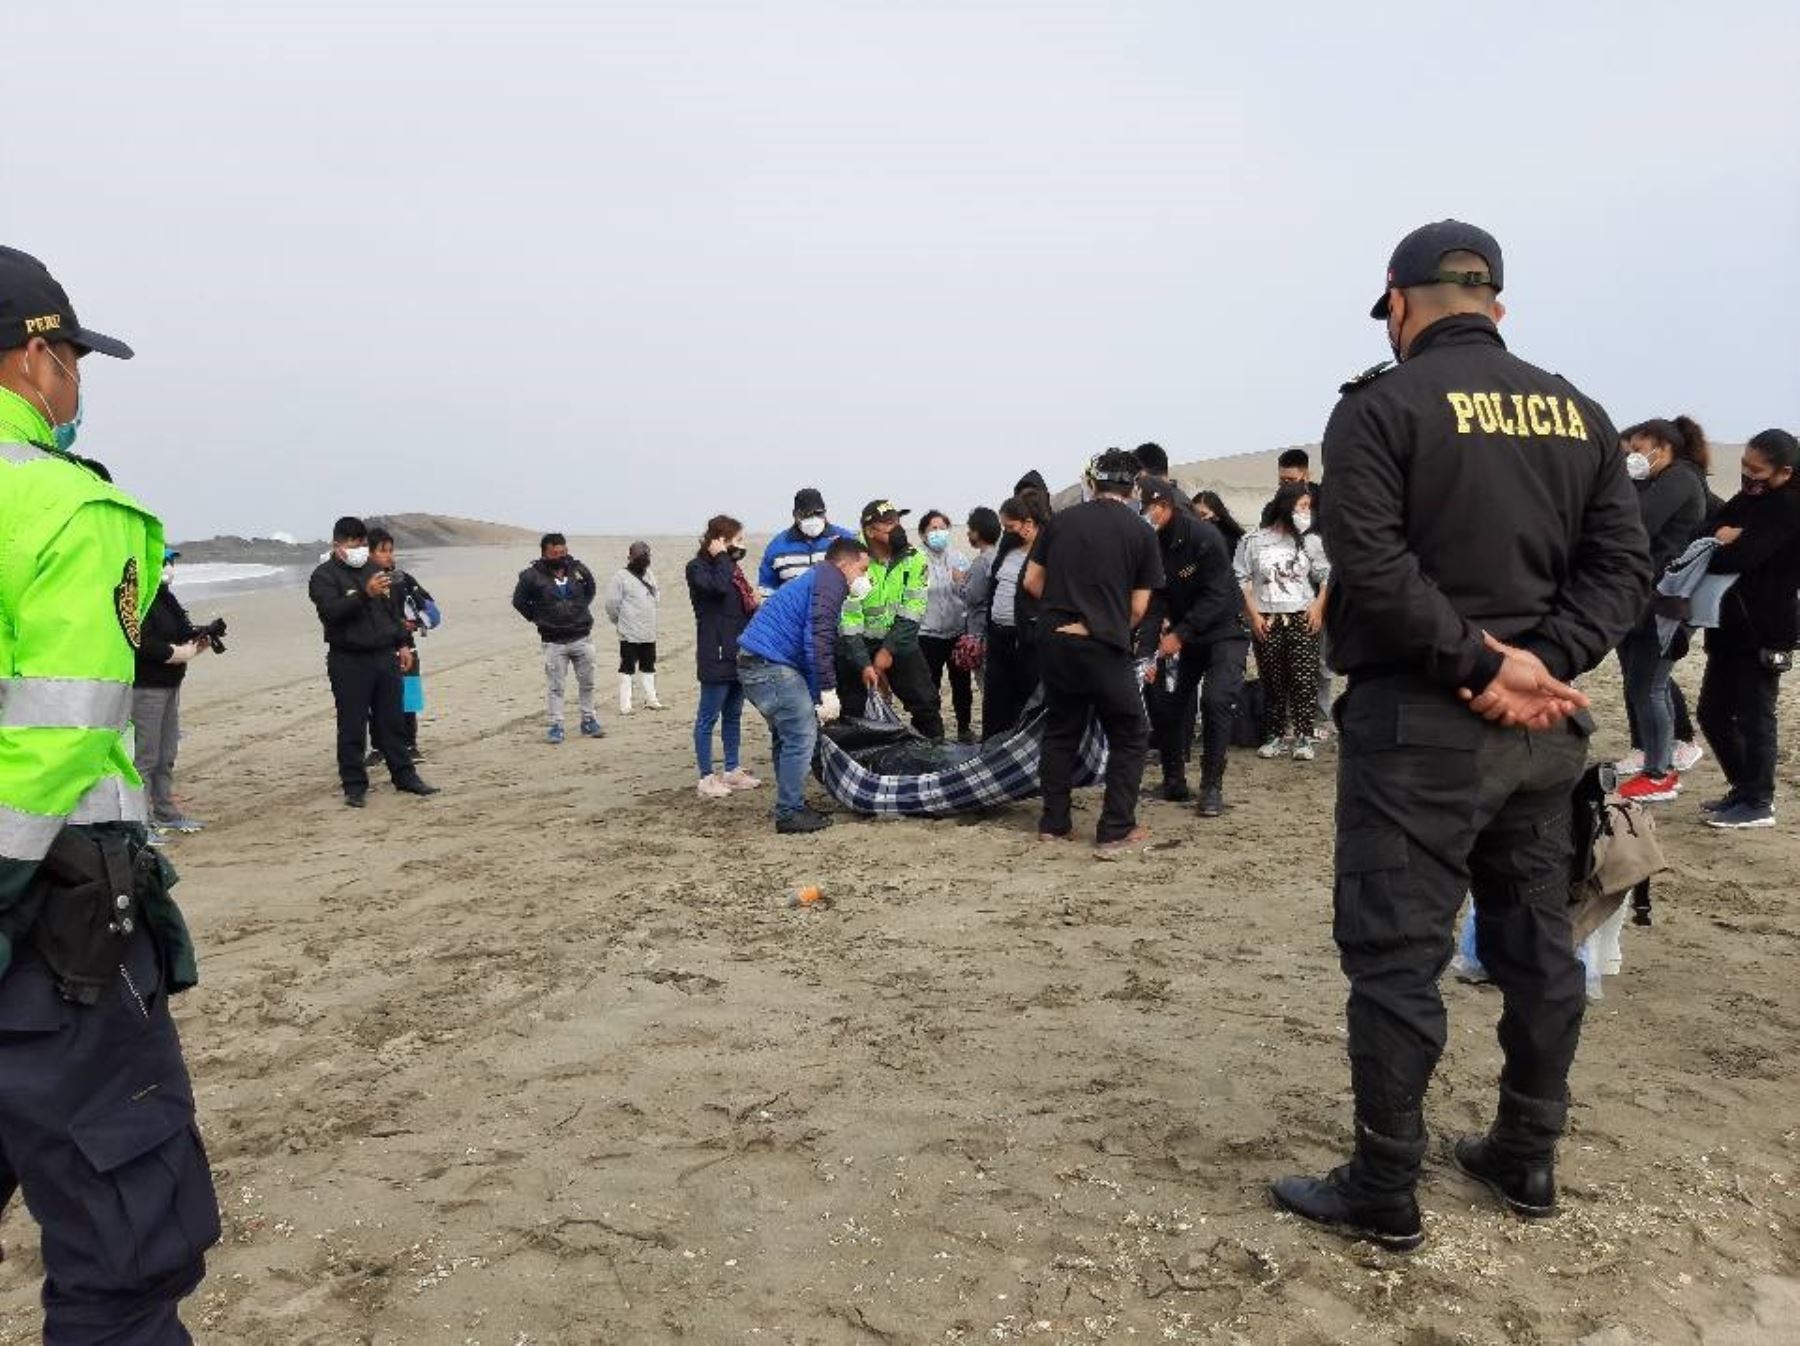 La Policía Nacional confirmó la muerte de un pescador a causa del naufragio de una embarcación frente al litoral de Huarmey, en Áncash.